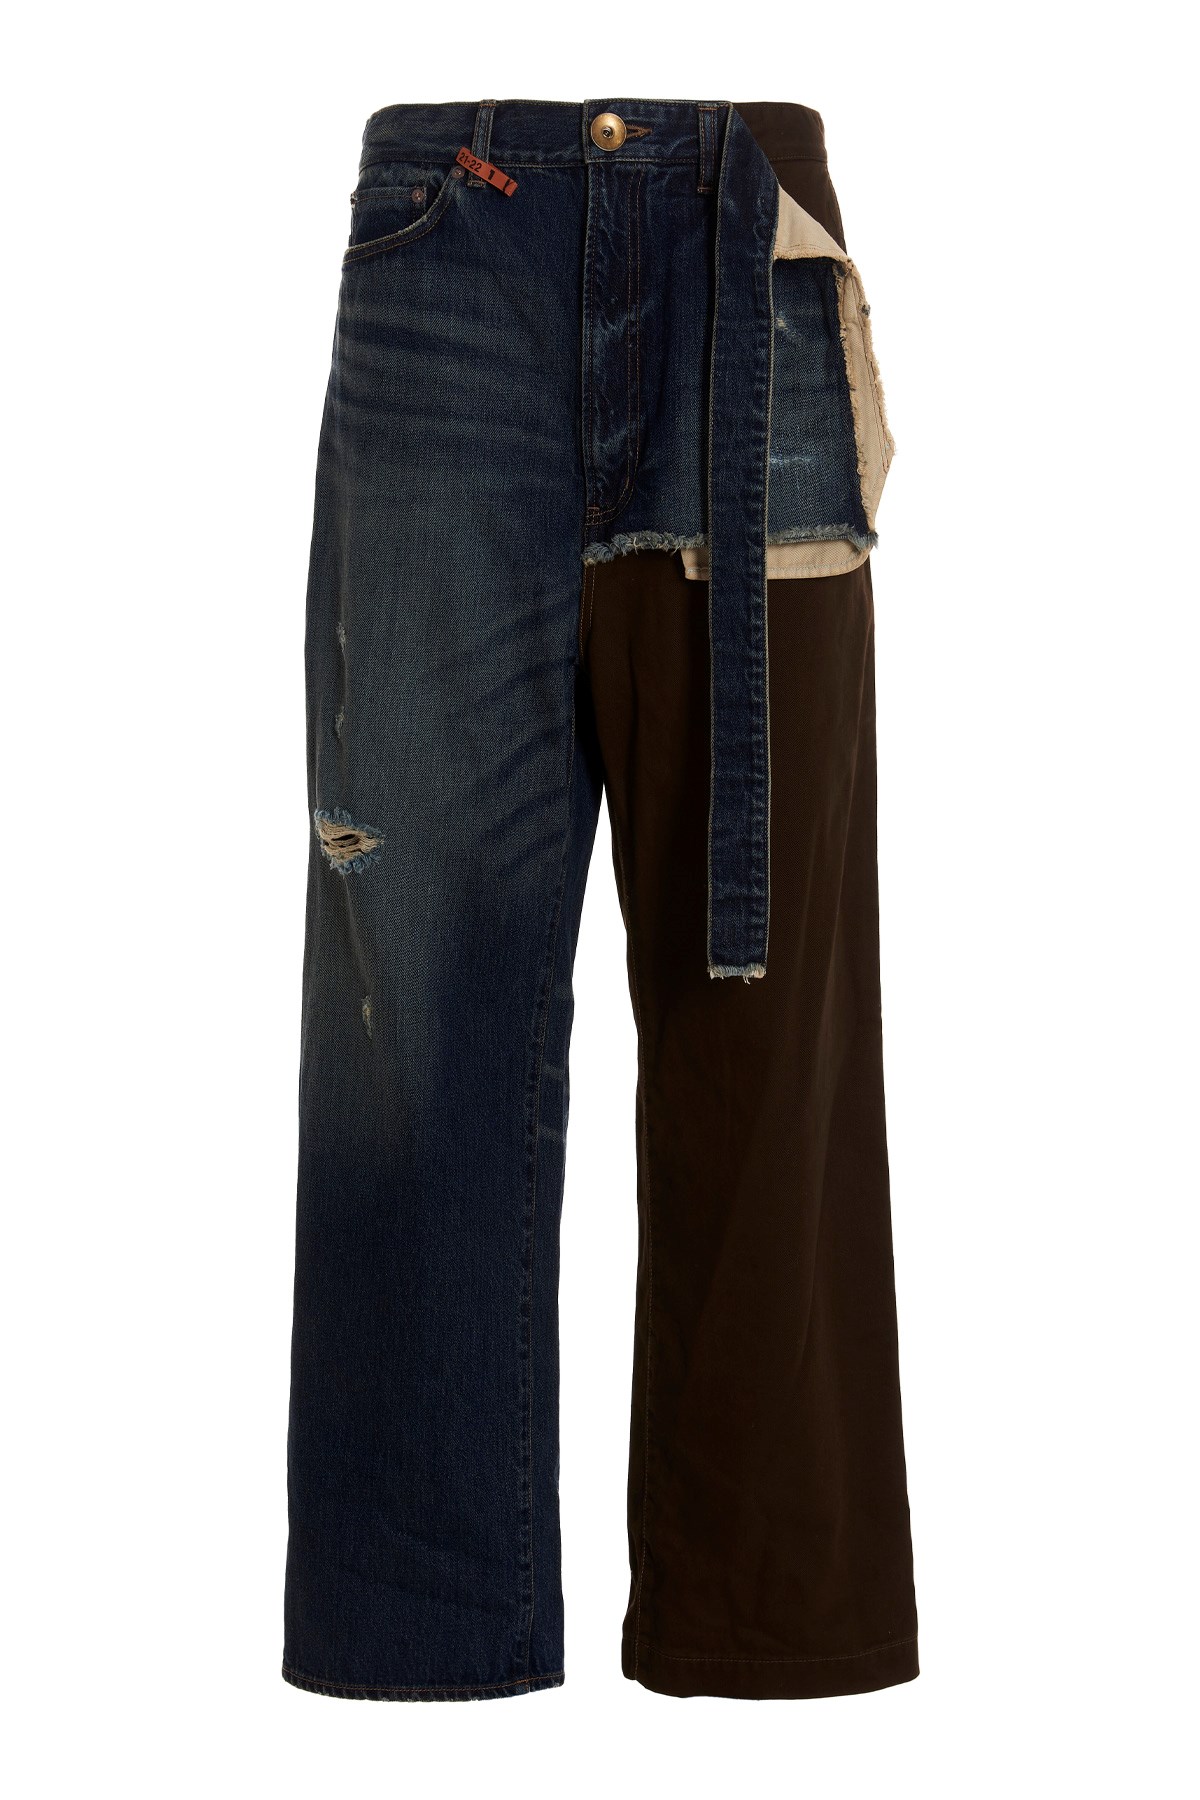 MAISON MIHARA YASUHIRO 'Denimxchino Combined’ Jeans